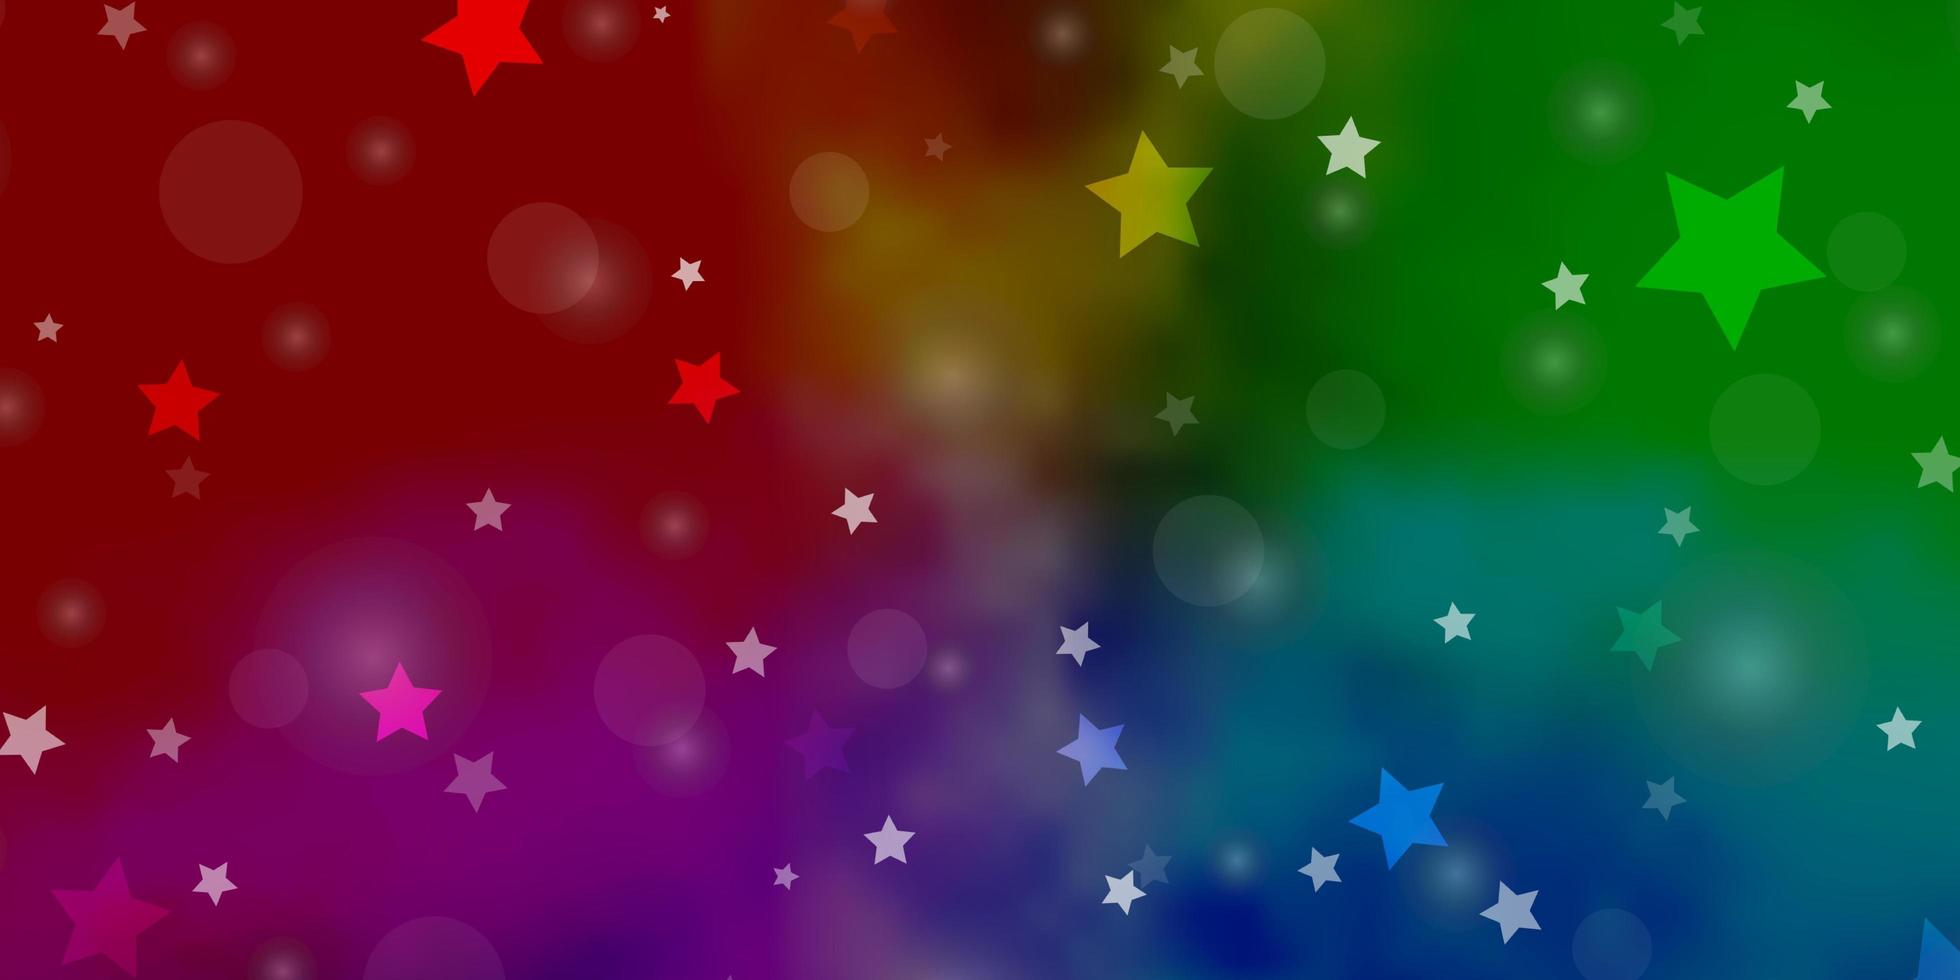 ljus flerfärgad vektor bakgrund med cirklar, stjärnor. abstrakt illustration med färgglada fläckar, stjärnor. design för tapeter, tygtillverkare.